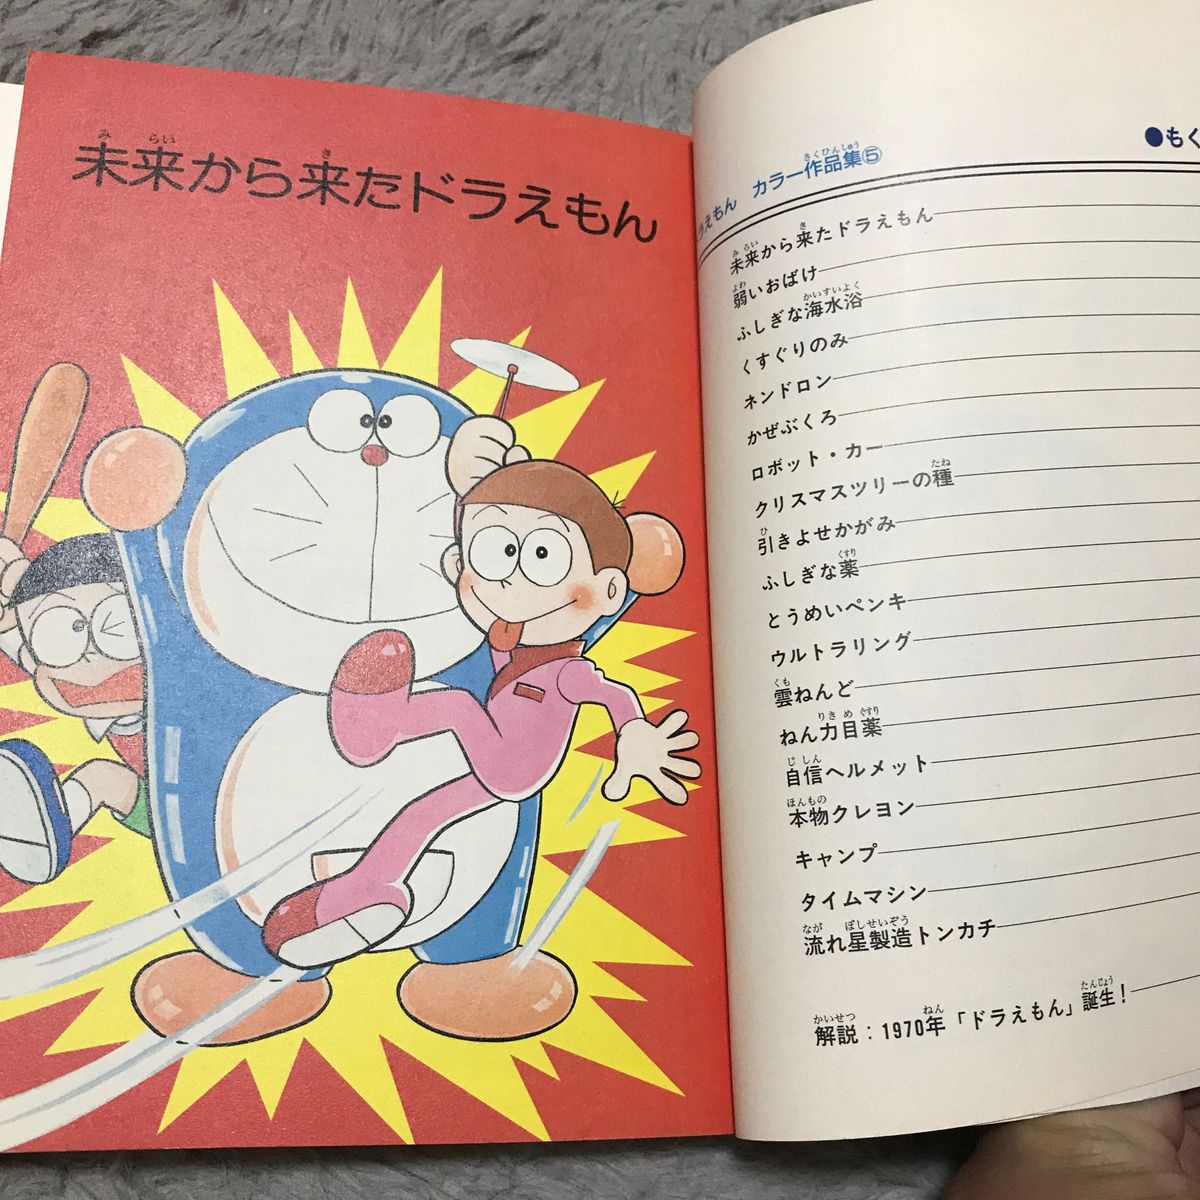 コミック5冊セット]ドラえもん カラー作品集 藤子・F・不二雄 小学館